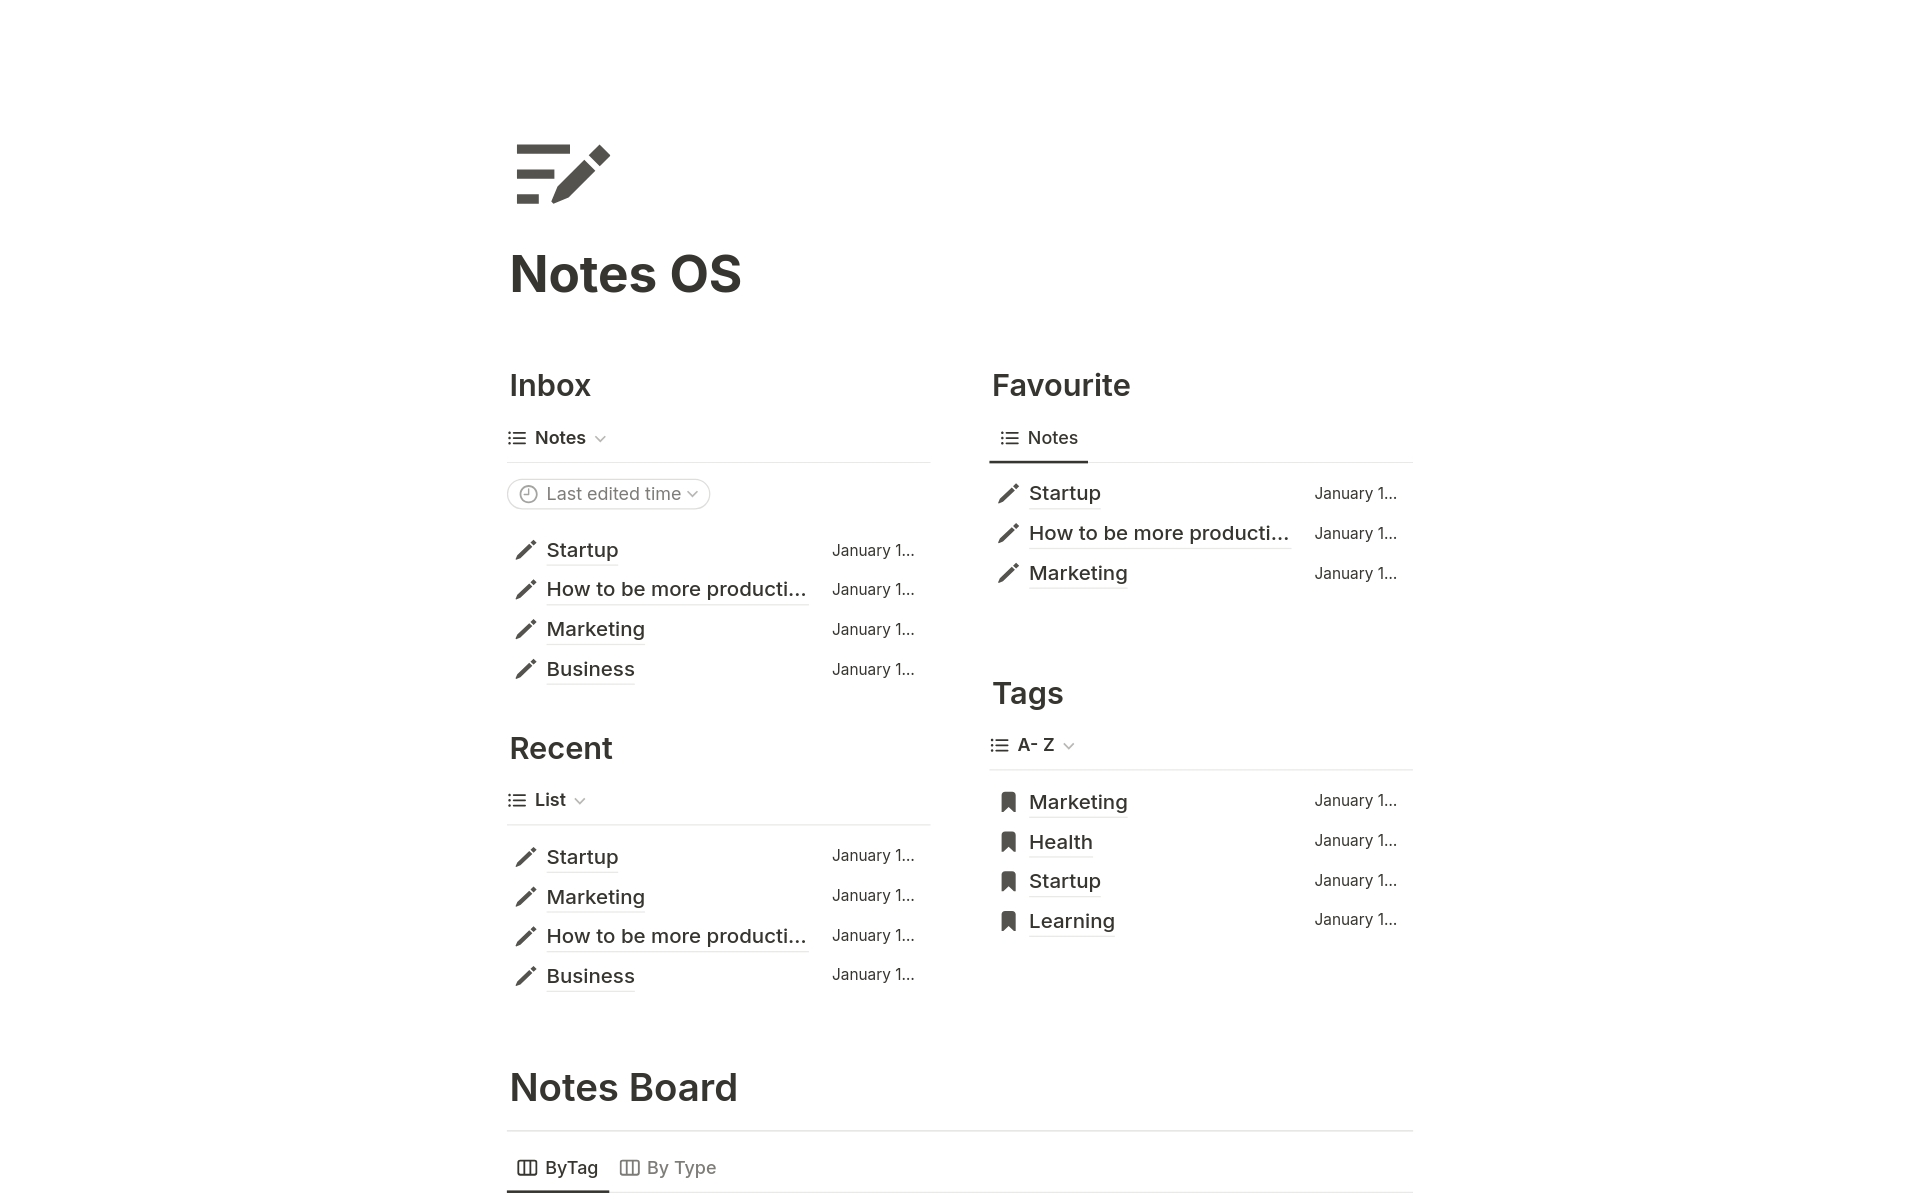 Aperçu du modèle de Ultimate Notes OS 